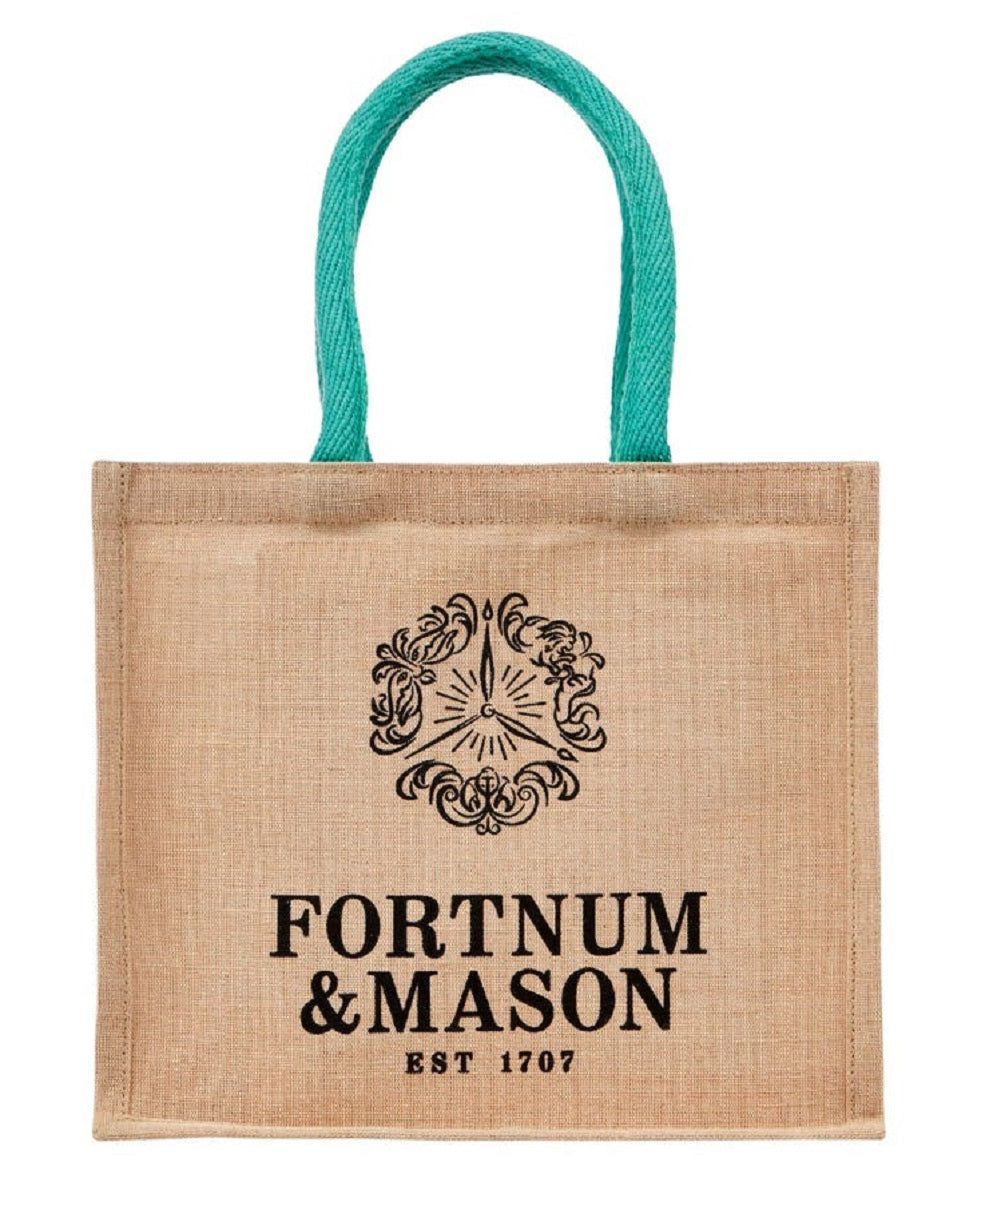 Fortnum & Mason フォートナム & メイソン プラスチックフリー ...